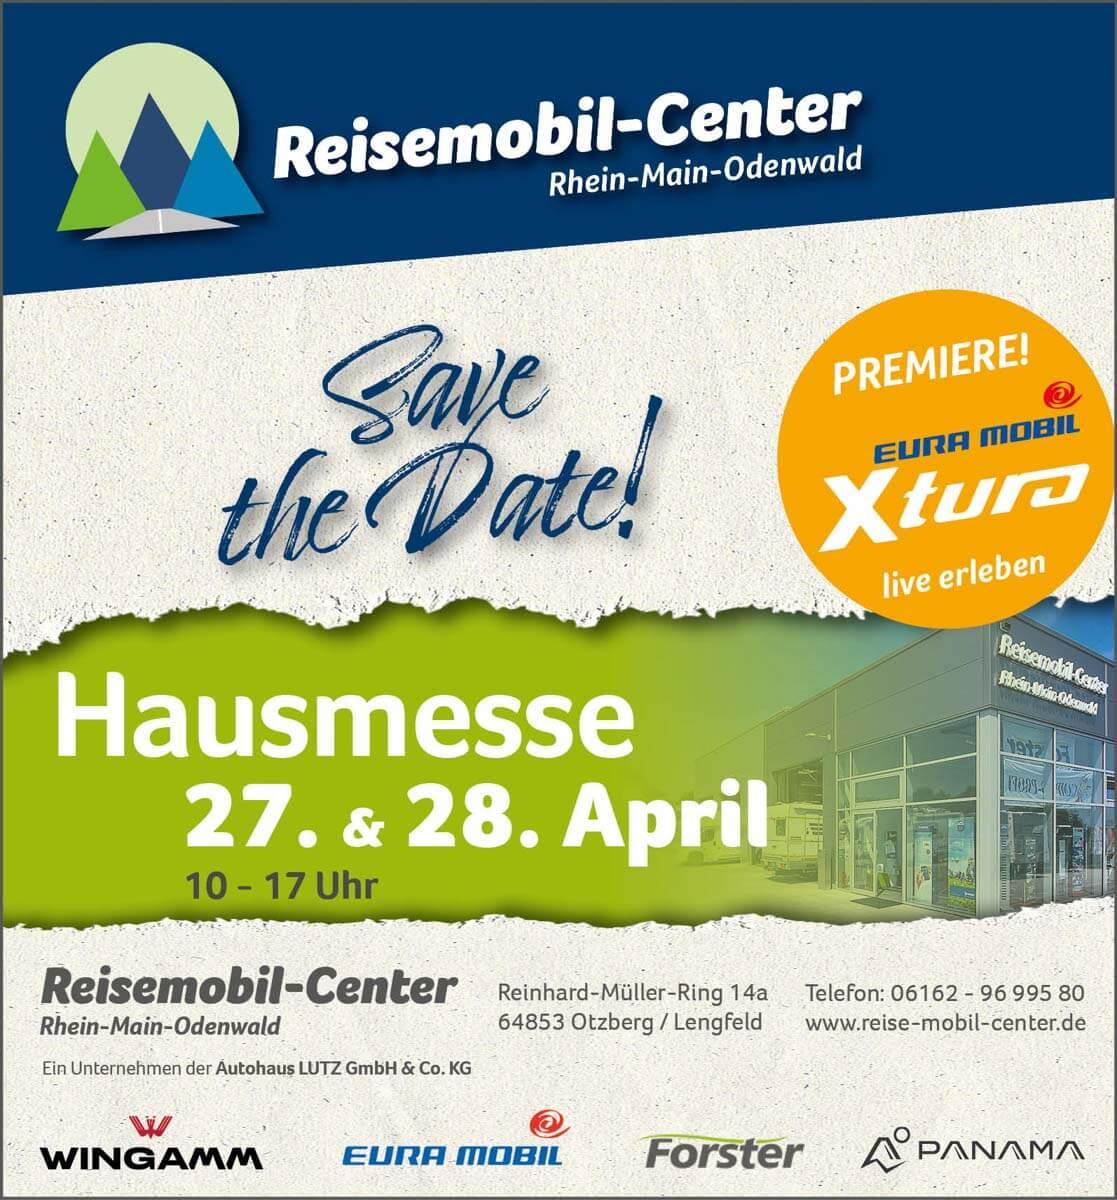 Am 27. und 28. April kann man sich einen Vorgeschmack auf eine Reise mit dem Wohnmobil gönnen. Das Reisemobil-Center Rhein-Main-Odenwald lädt zu seiner Messe ein, an beiden Tagen von 10 Uhr bis 17 Uhr.
                 title=